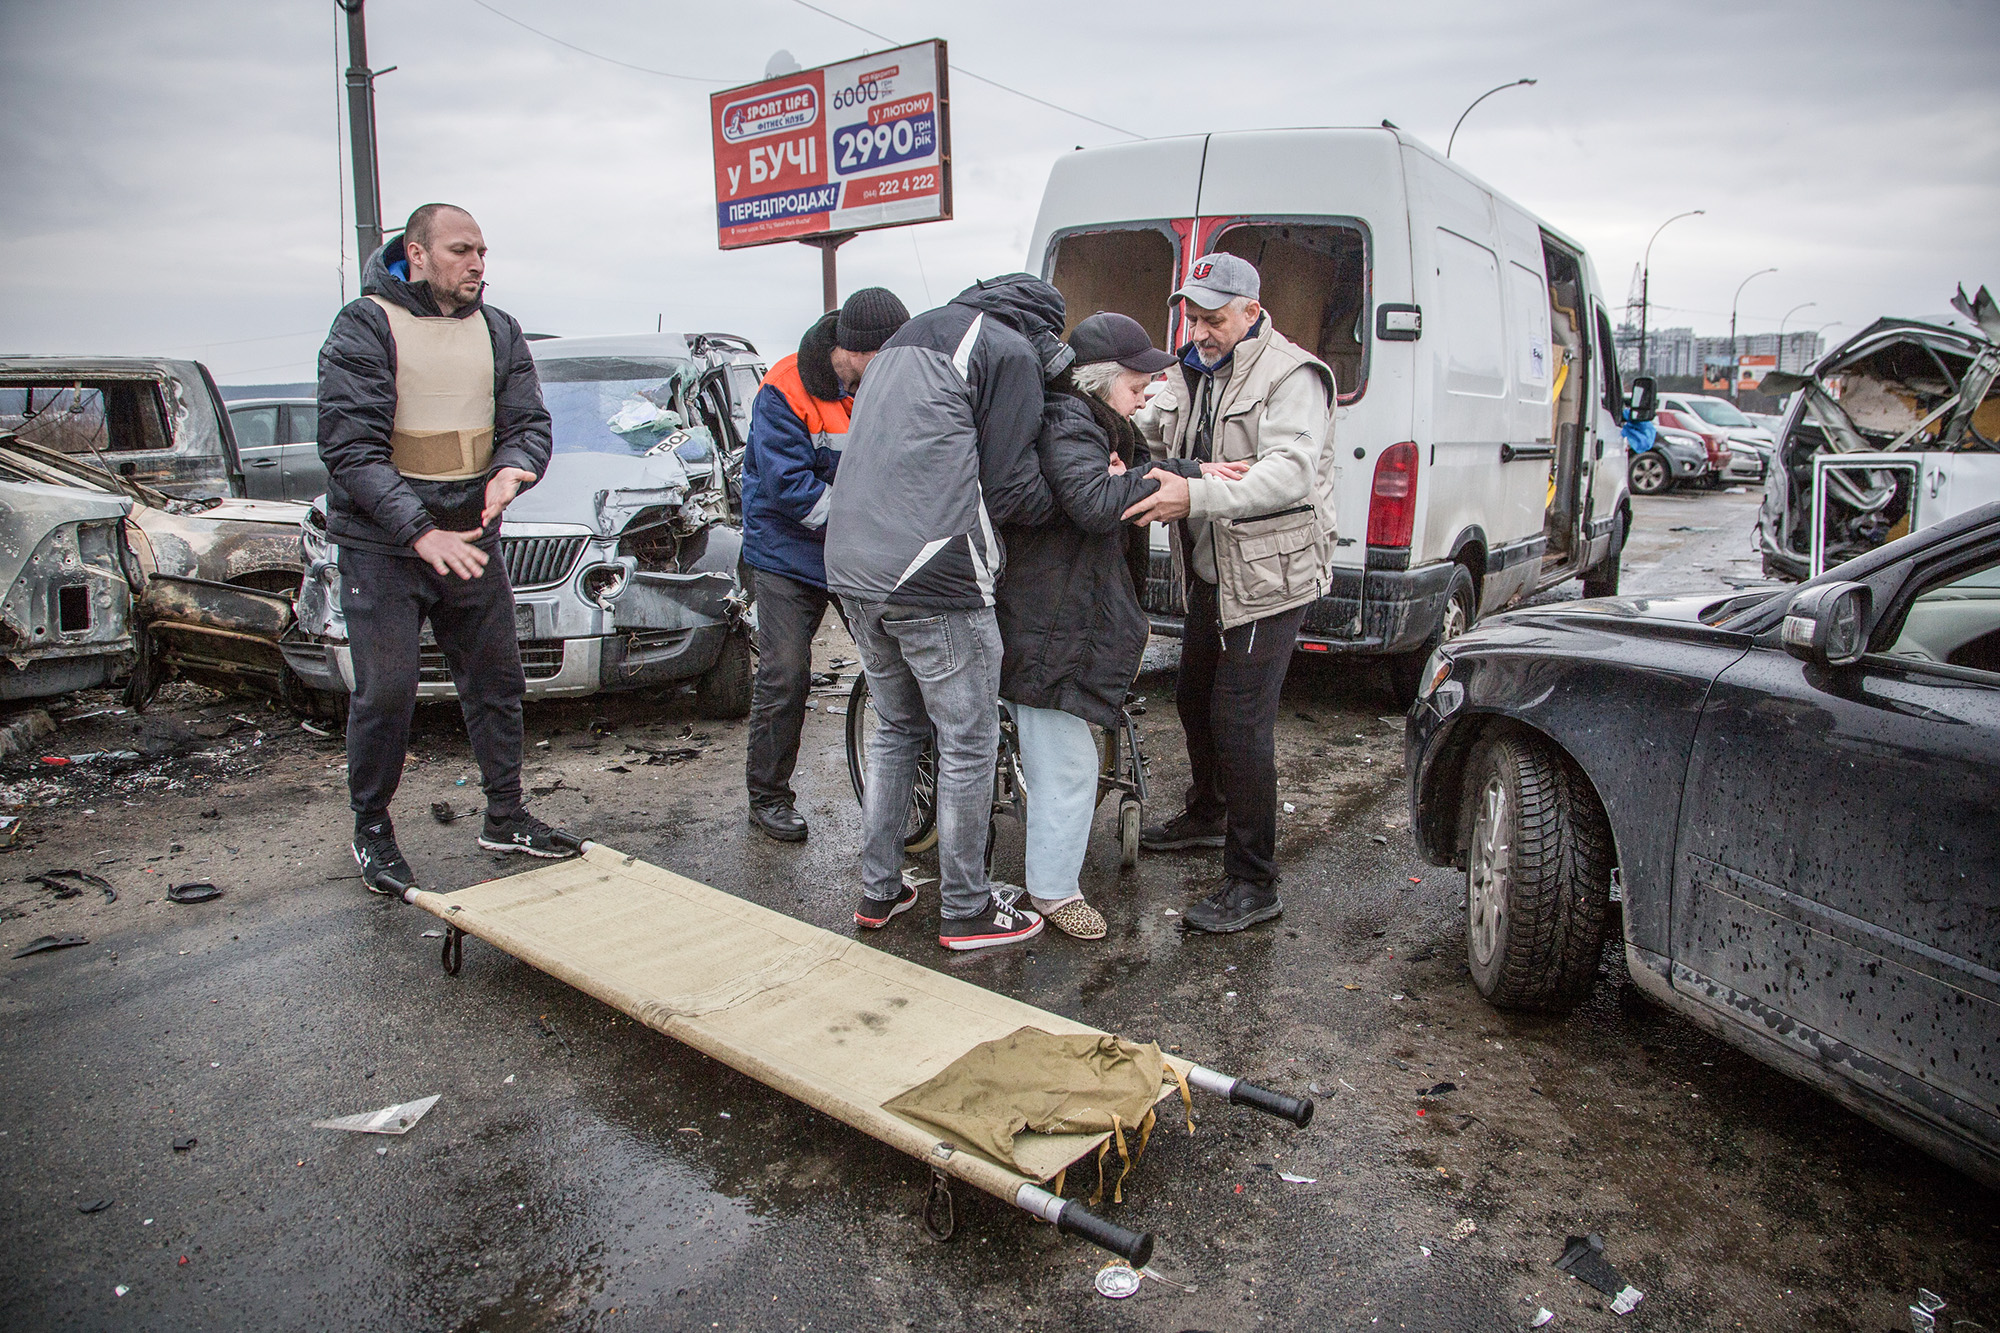 Ukraine, displaced, soldier, dog, stretcher, wrecked vehicles